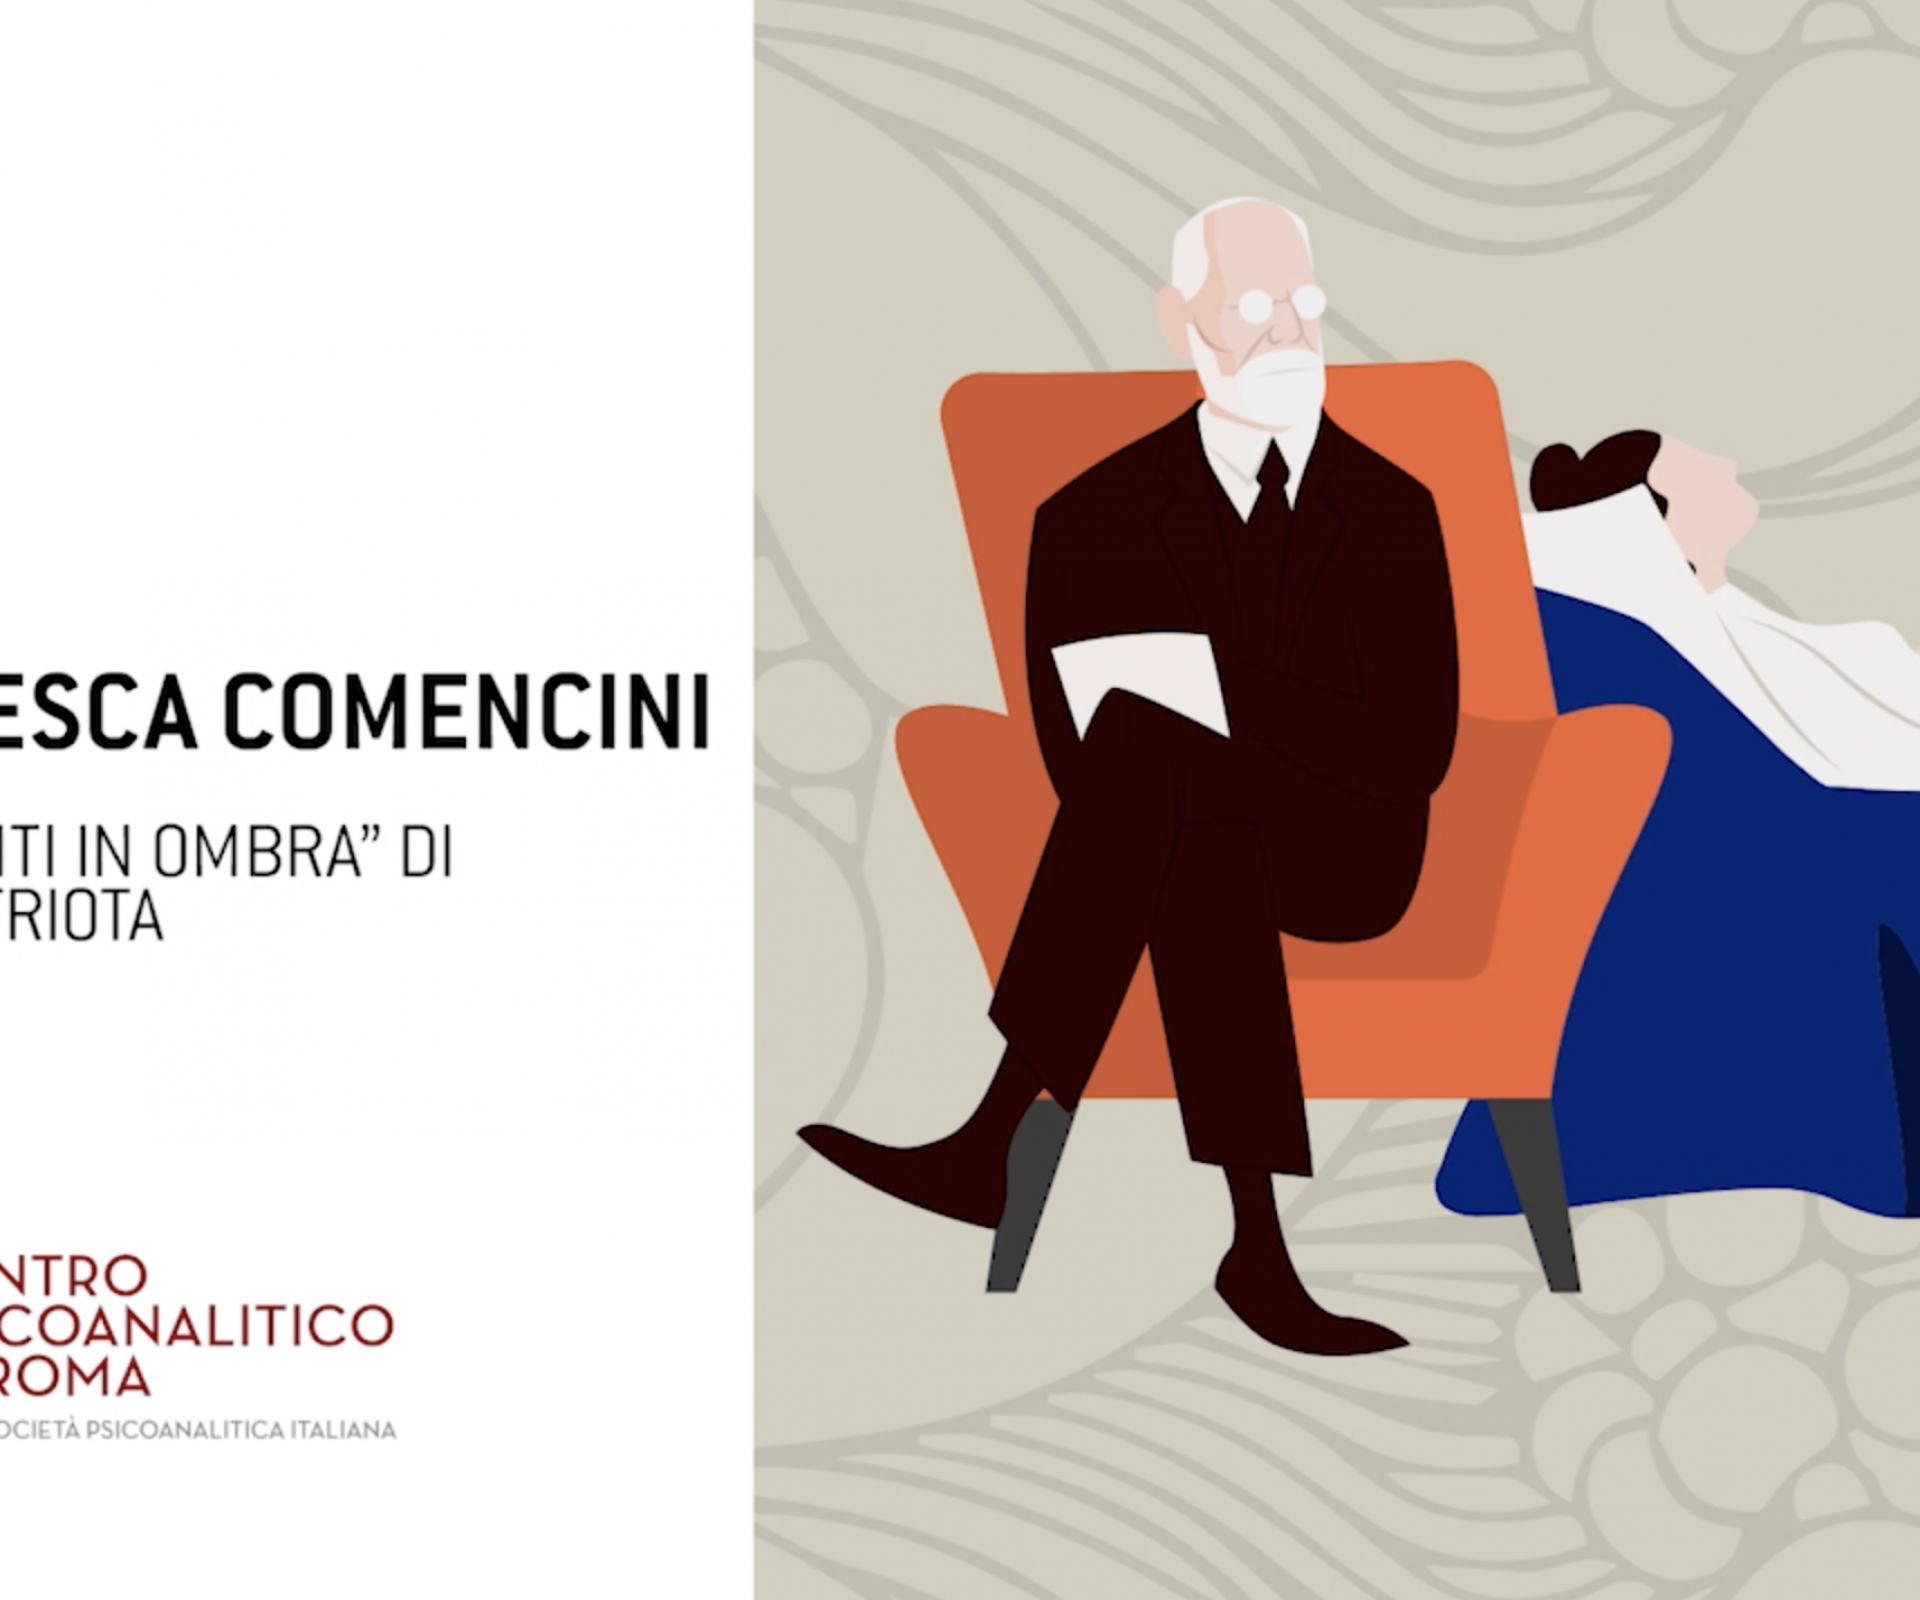 Francesca Comencini presenta "Frammenti in ombra” di Fabio Castriota.